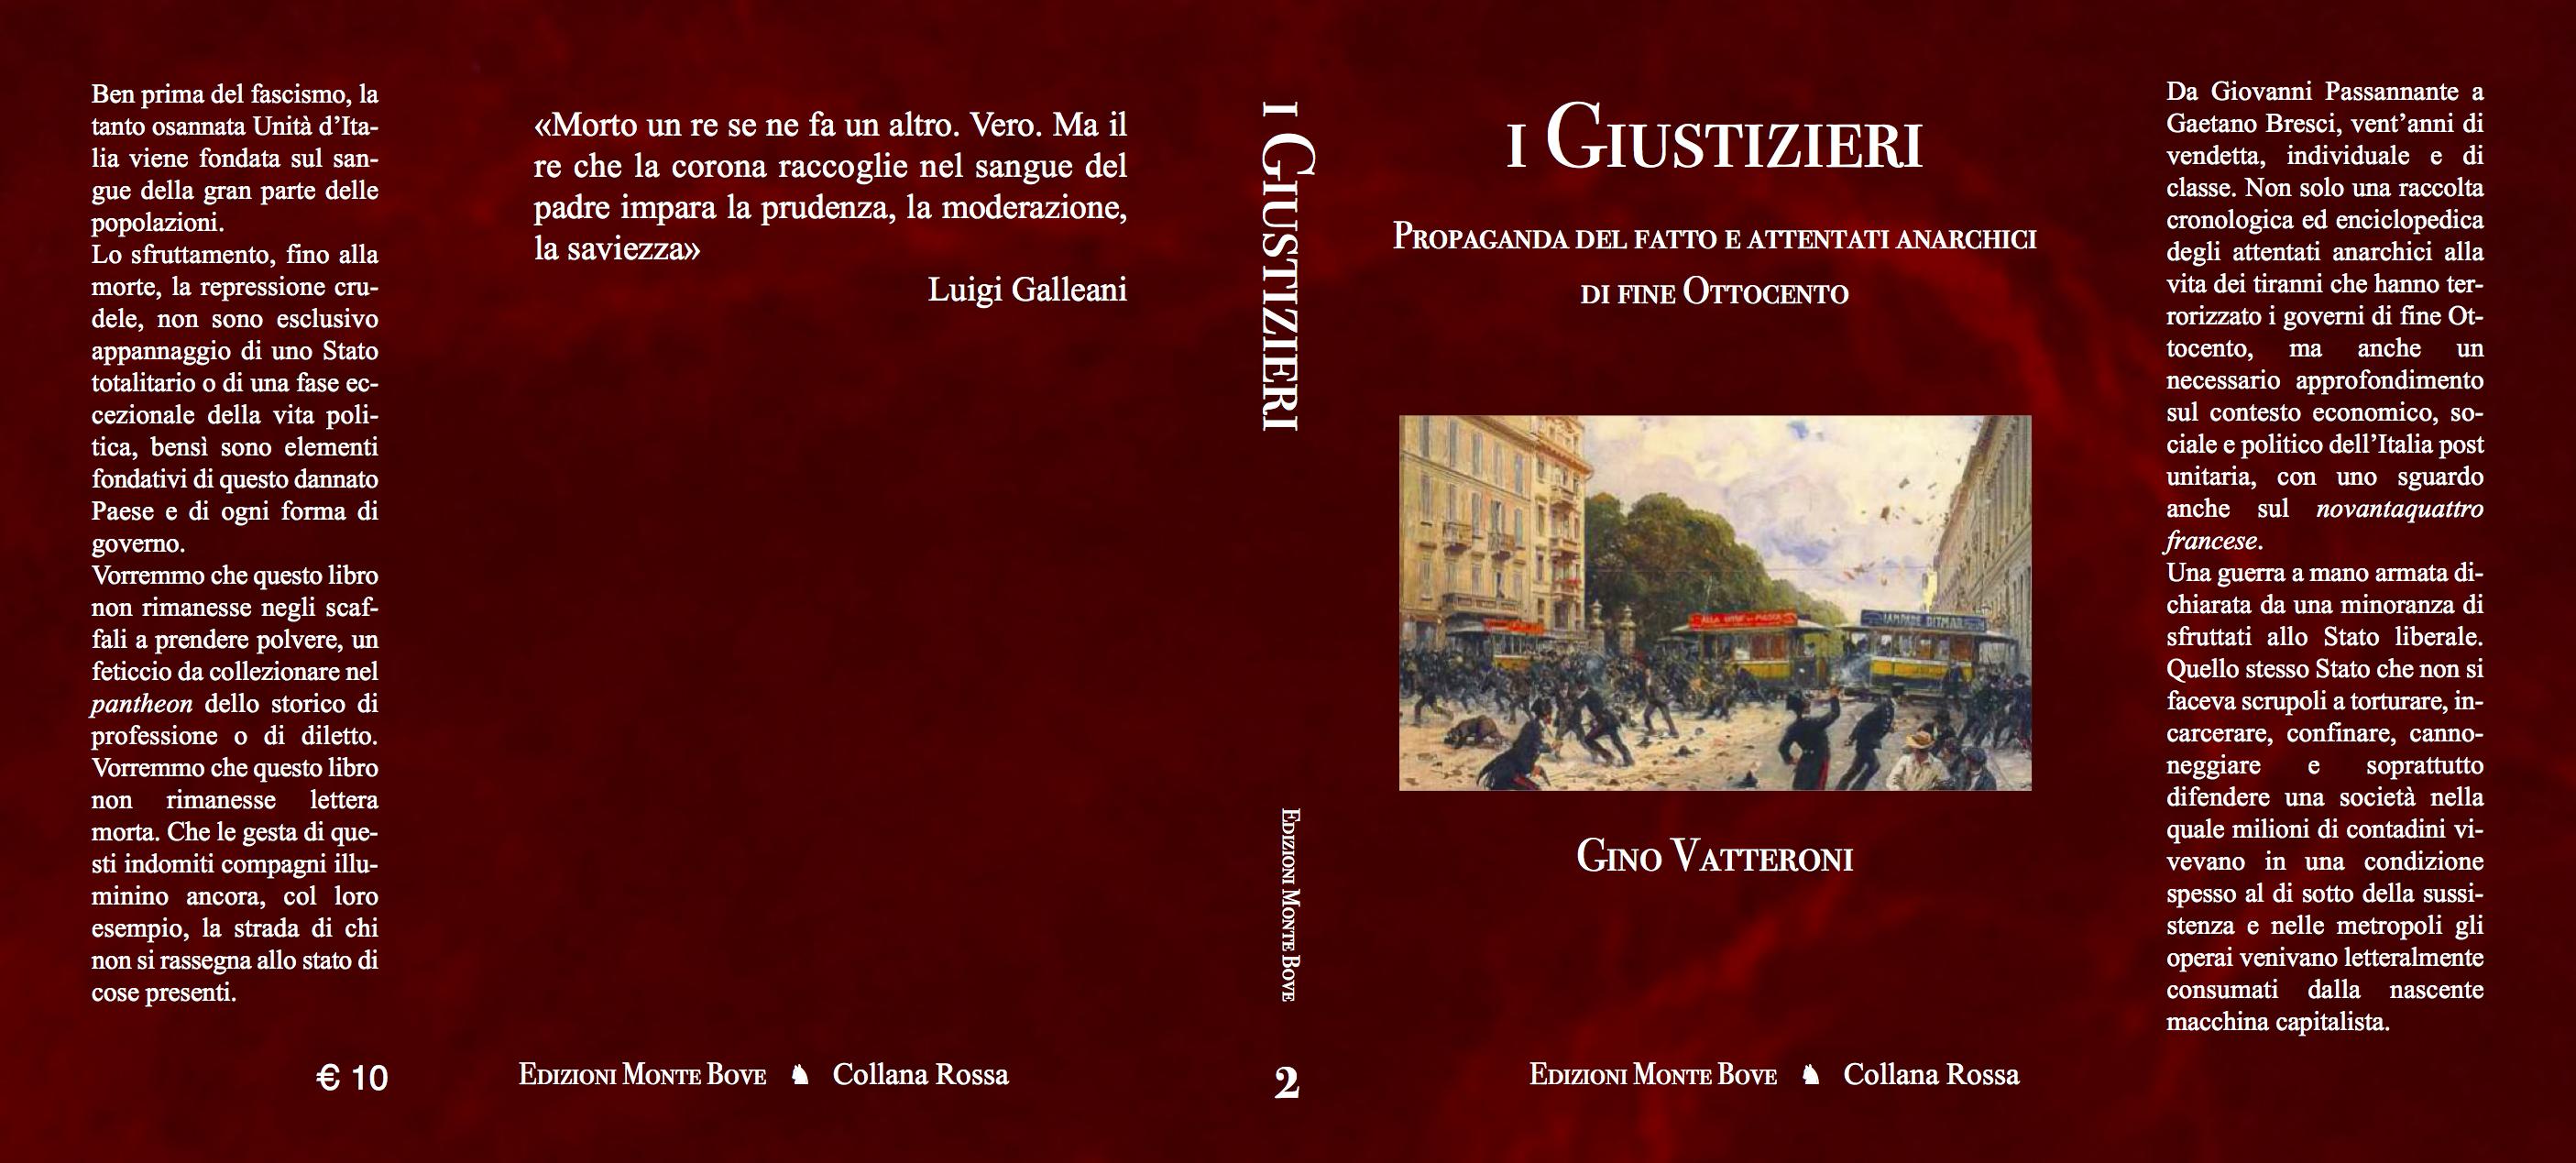 i-e-italia-e-uscito-il-libro-i-giustizieri-propaga-1.jpg